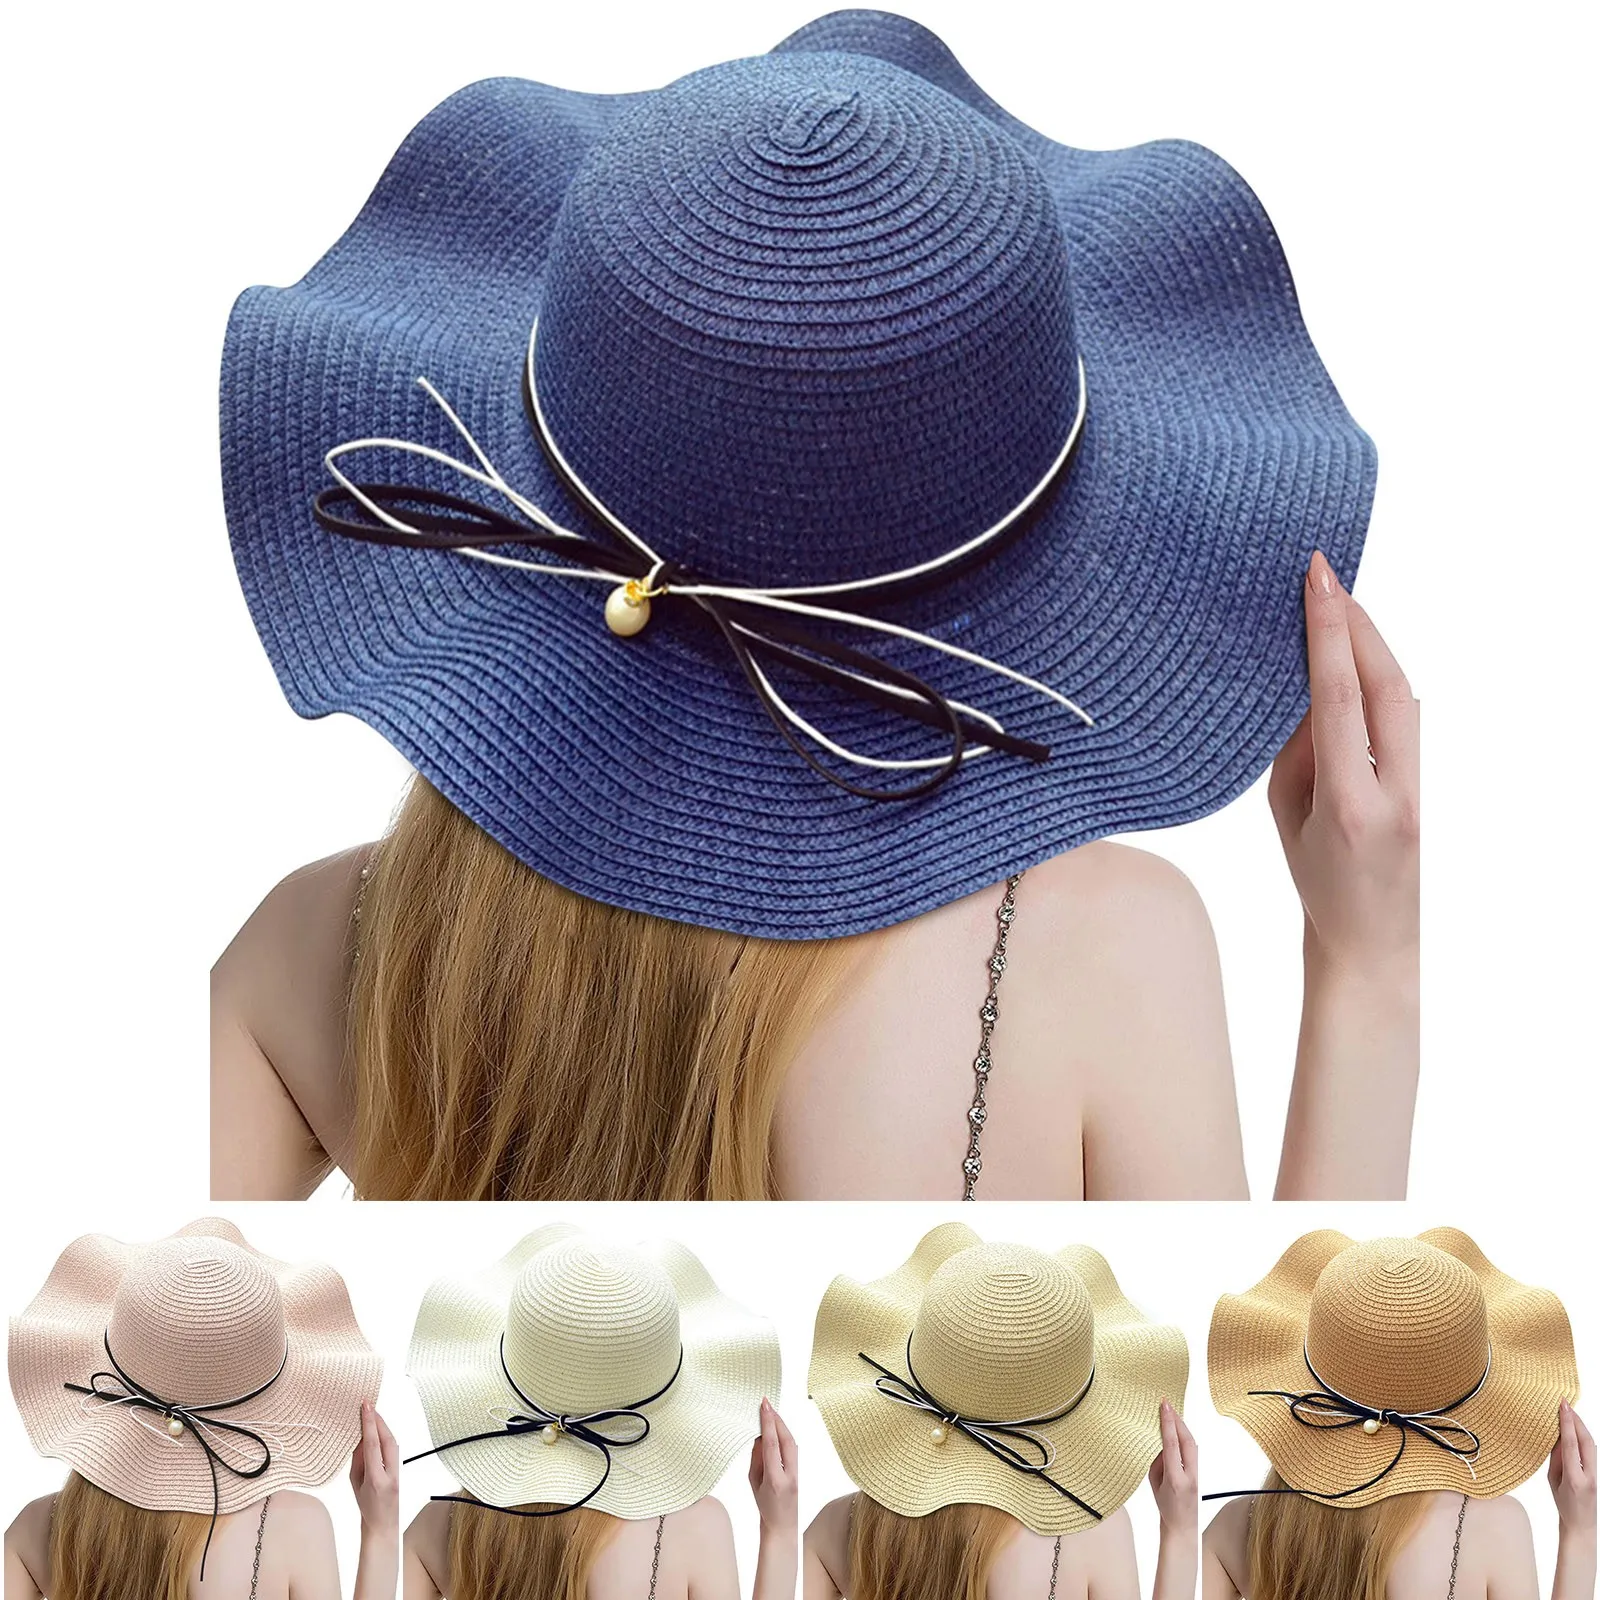 Женские летние путешествия, пляж, защита от ультрафиолета, широкополая соломенная шляпа с бантом, солнцезащитная кепка, защита от ультрафиолета, Широкополая соломенная шляпа с бантом, солнцезащитная кепка L2